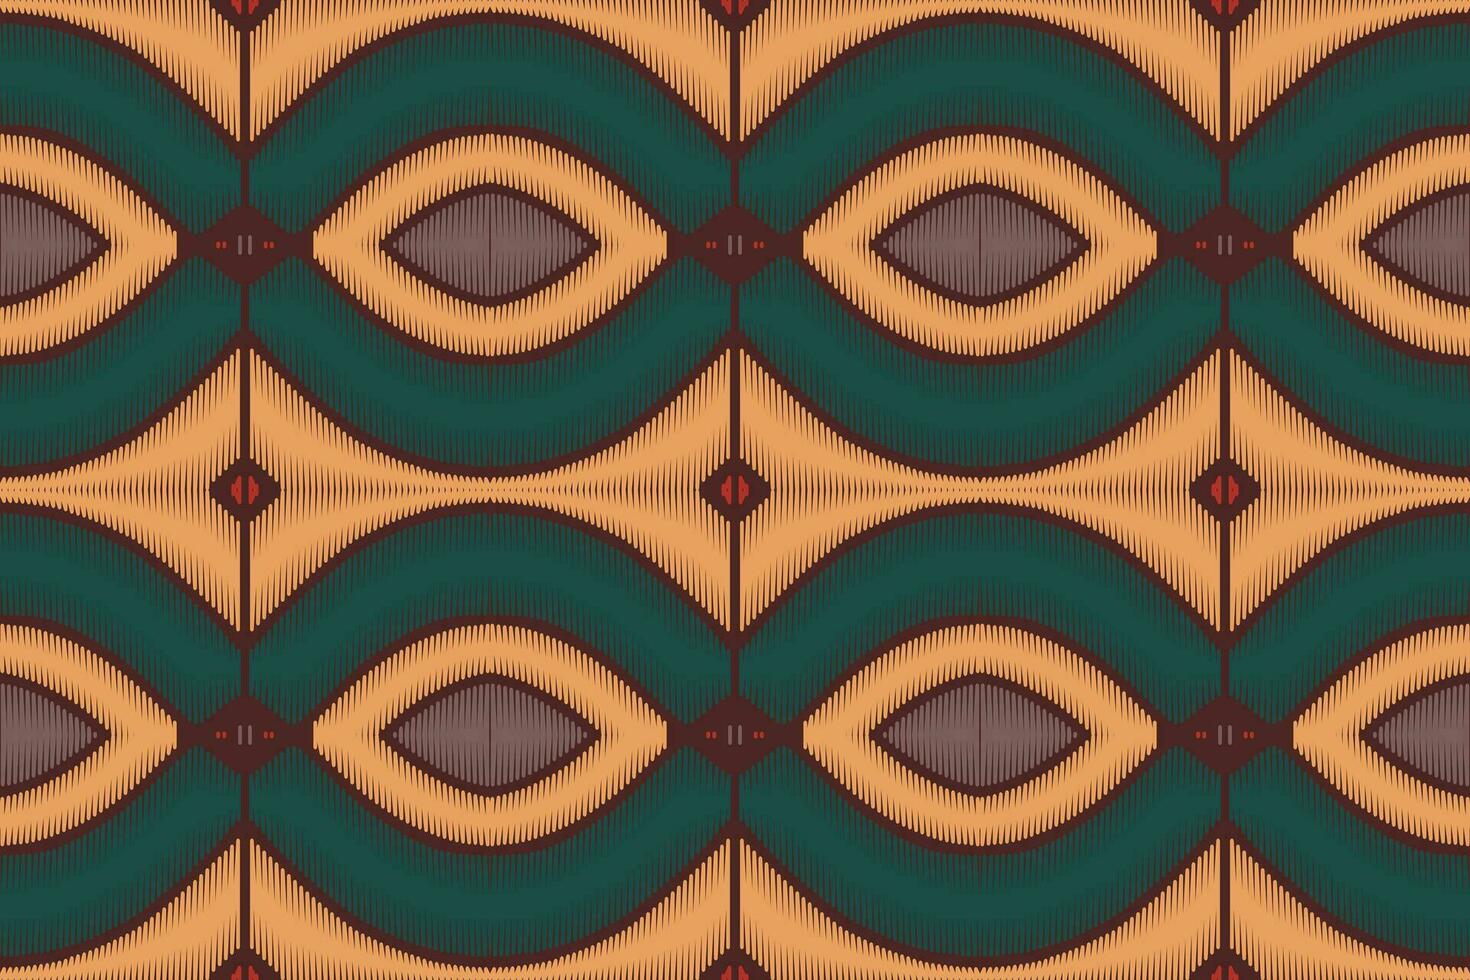 bordado de paisley floral ikat sobre fondo blanco.patrón oriental étnico geométrico tradicional.ilustración vectorial abstracta de estilo azteca.diseño para textura,tela,ropa,envoltura,decoración,sarong. vector